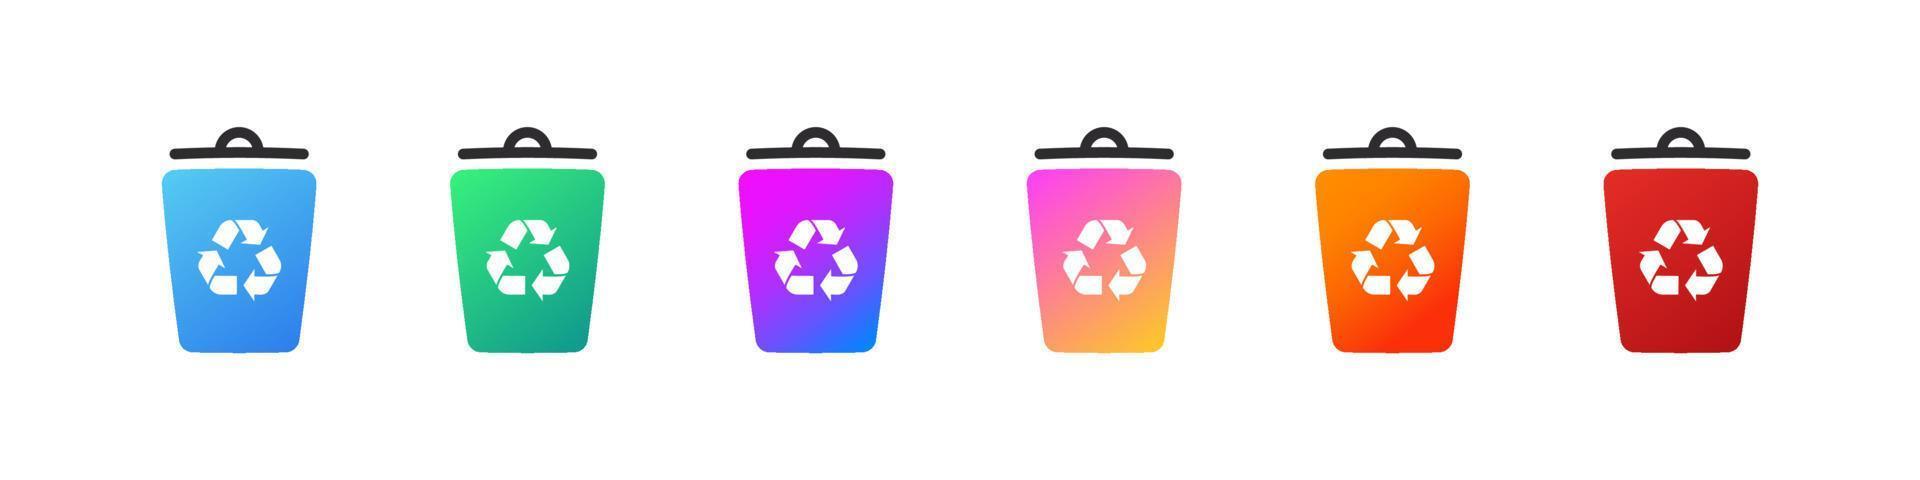 recycle bak pictogrammen. pictogrammen van uitschot blikjes voor verschillend types van afval. vector illustratie